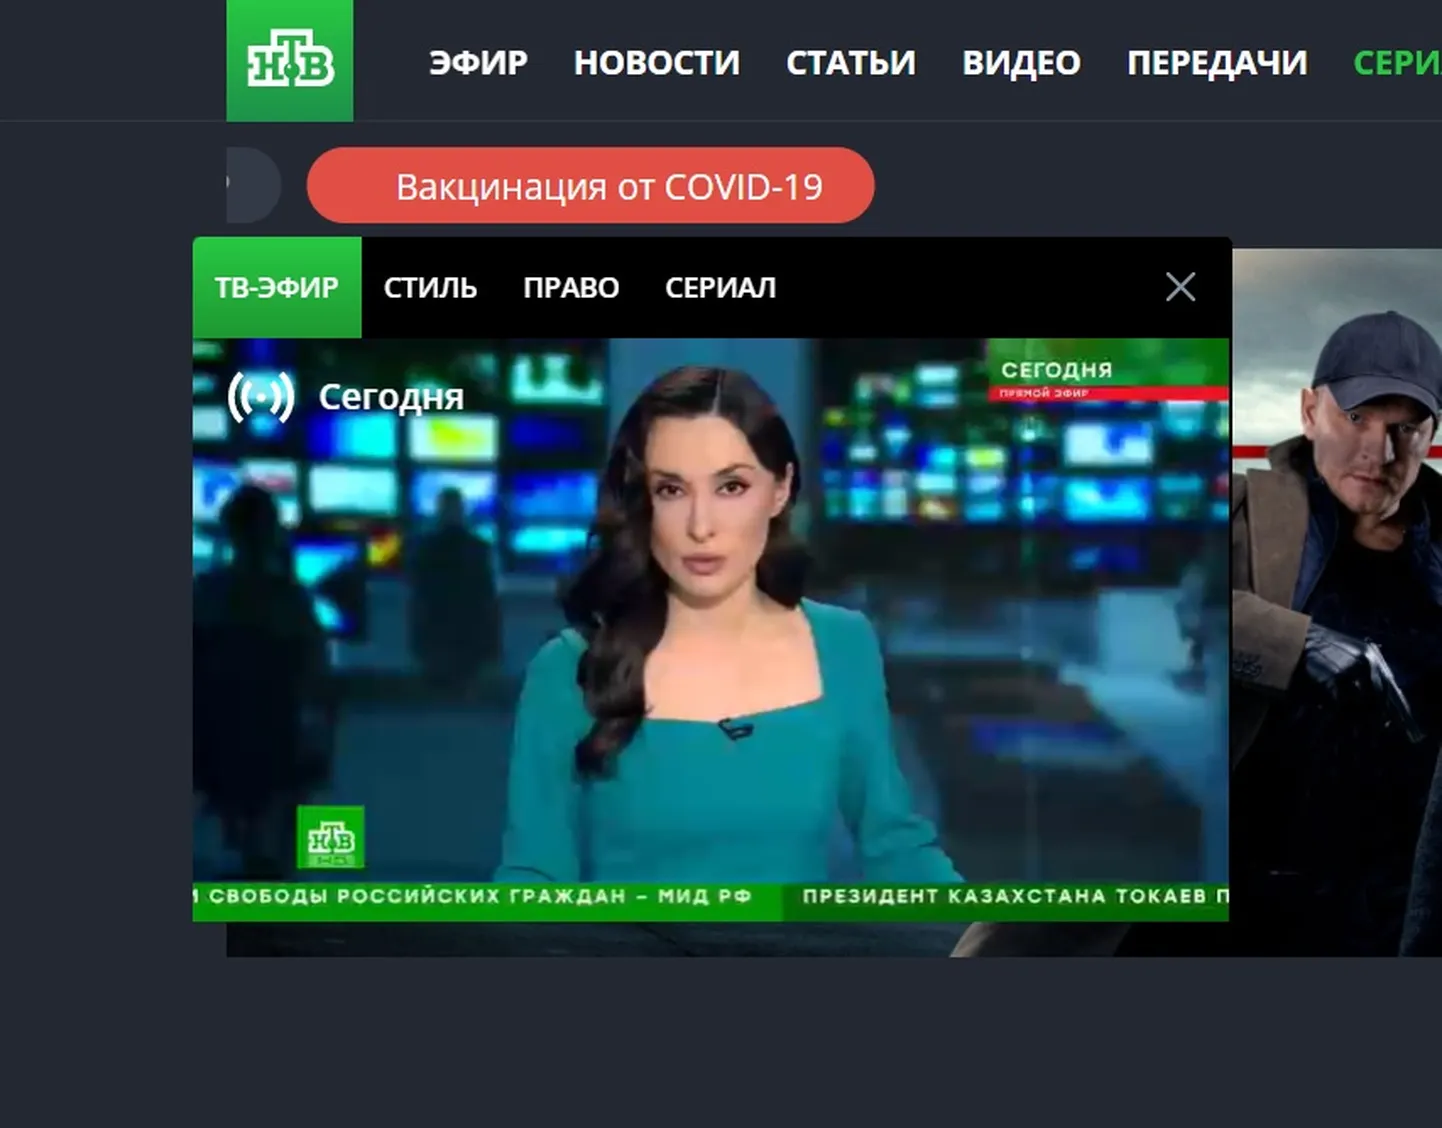 Vene kanalid asendatakse uudistega